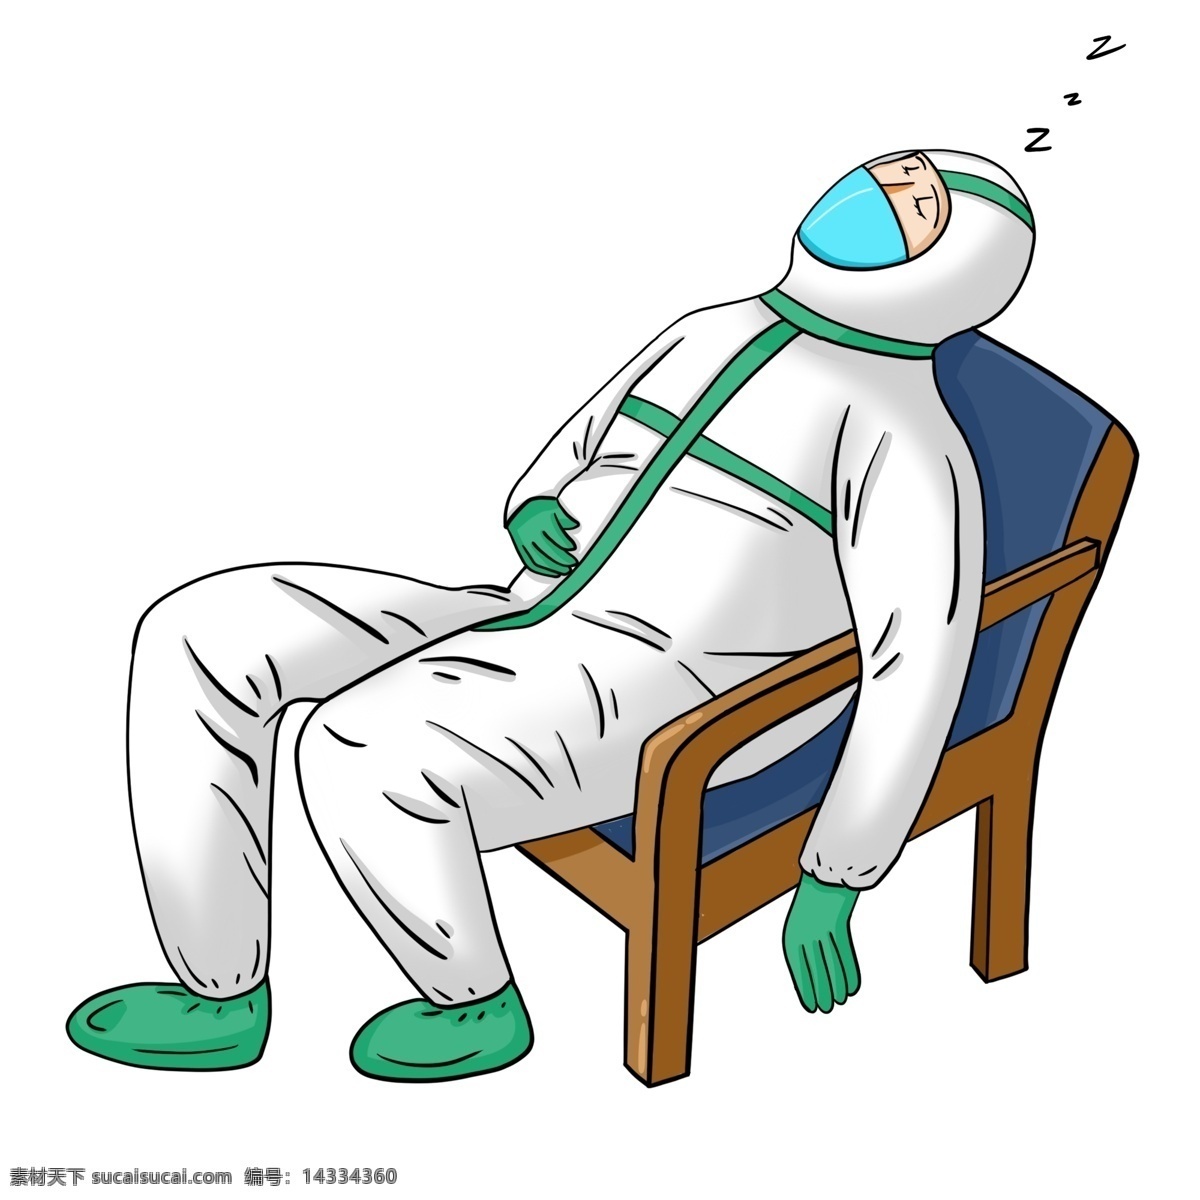 工作 疲惫 睡着 医生 原创 手绘 卡通 dream 防护服 冠状病毒 加班 卡通手绘 抗疫 口罩 睡觉 动漫动画